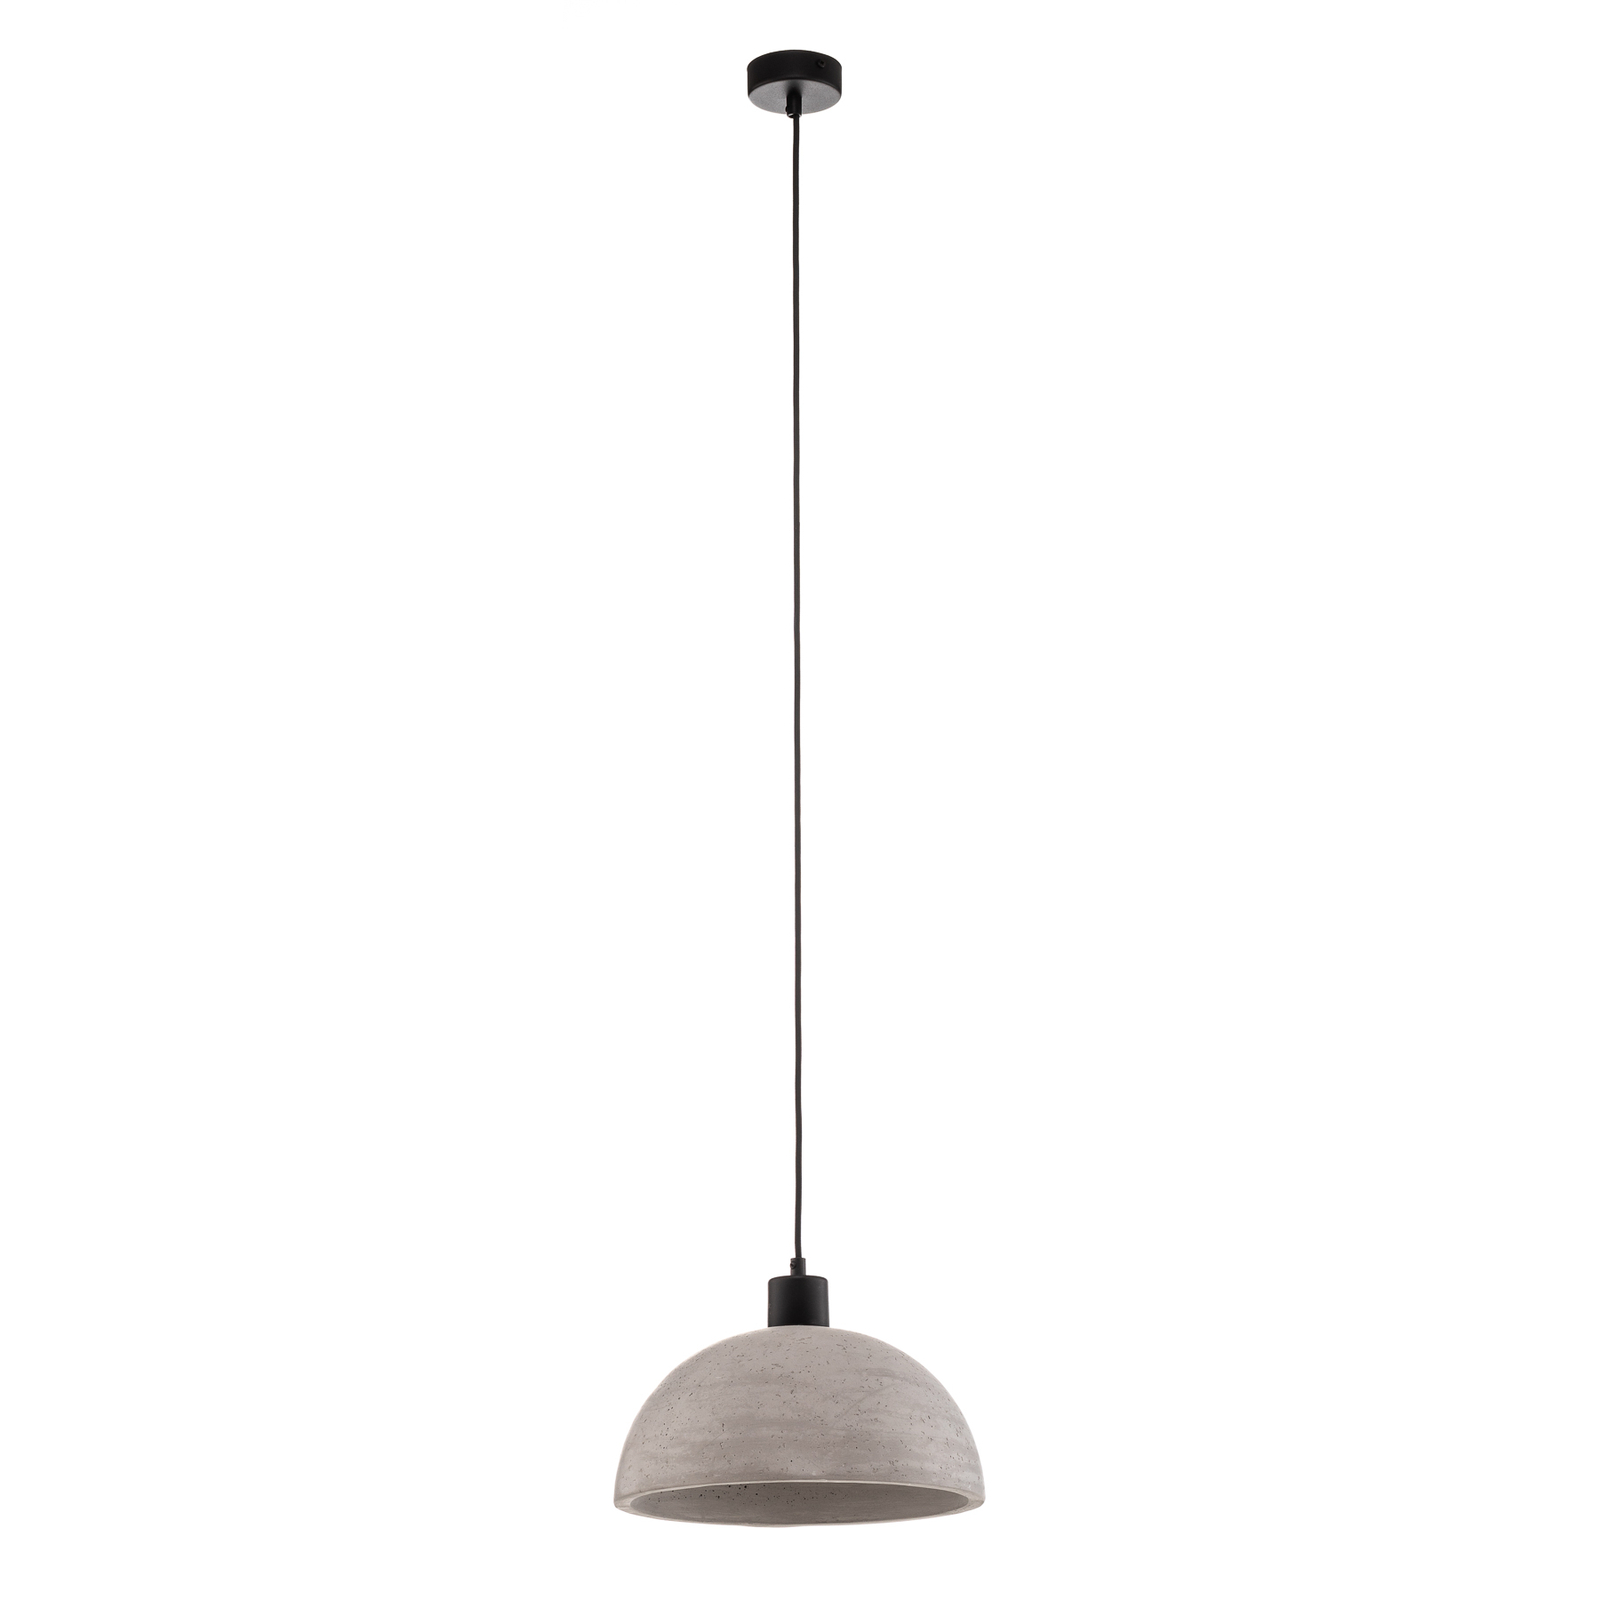 Hanglamp Lito met betonkap als halve bol